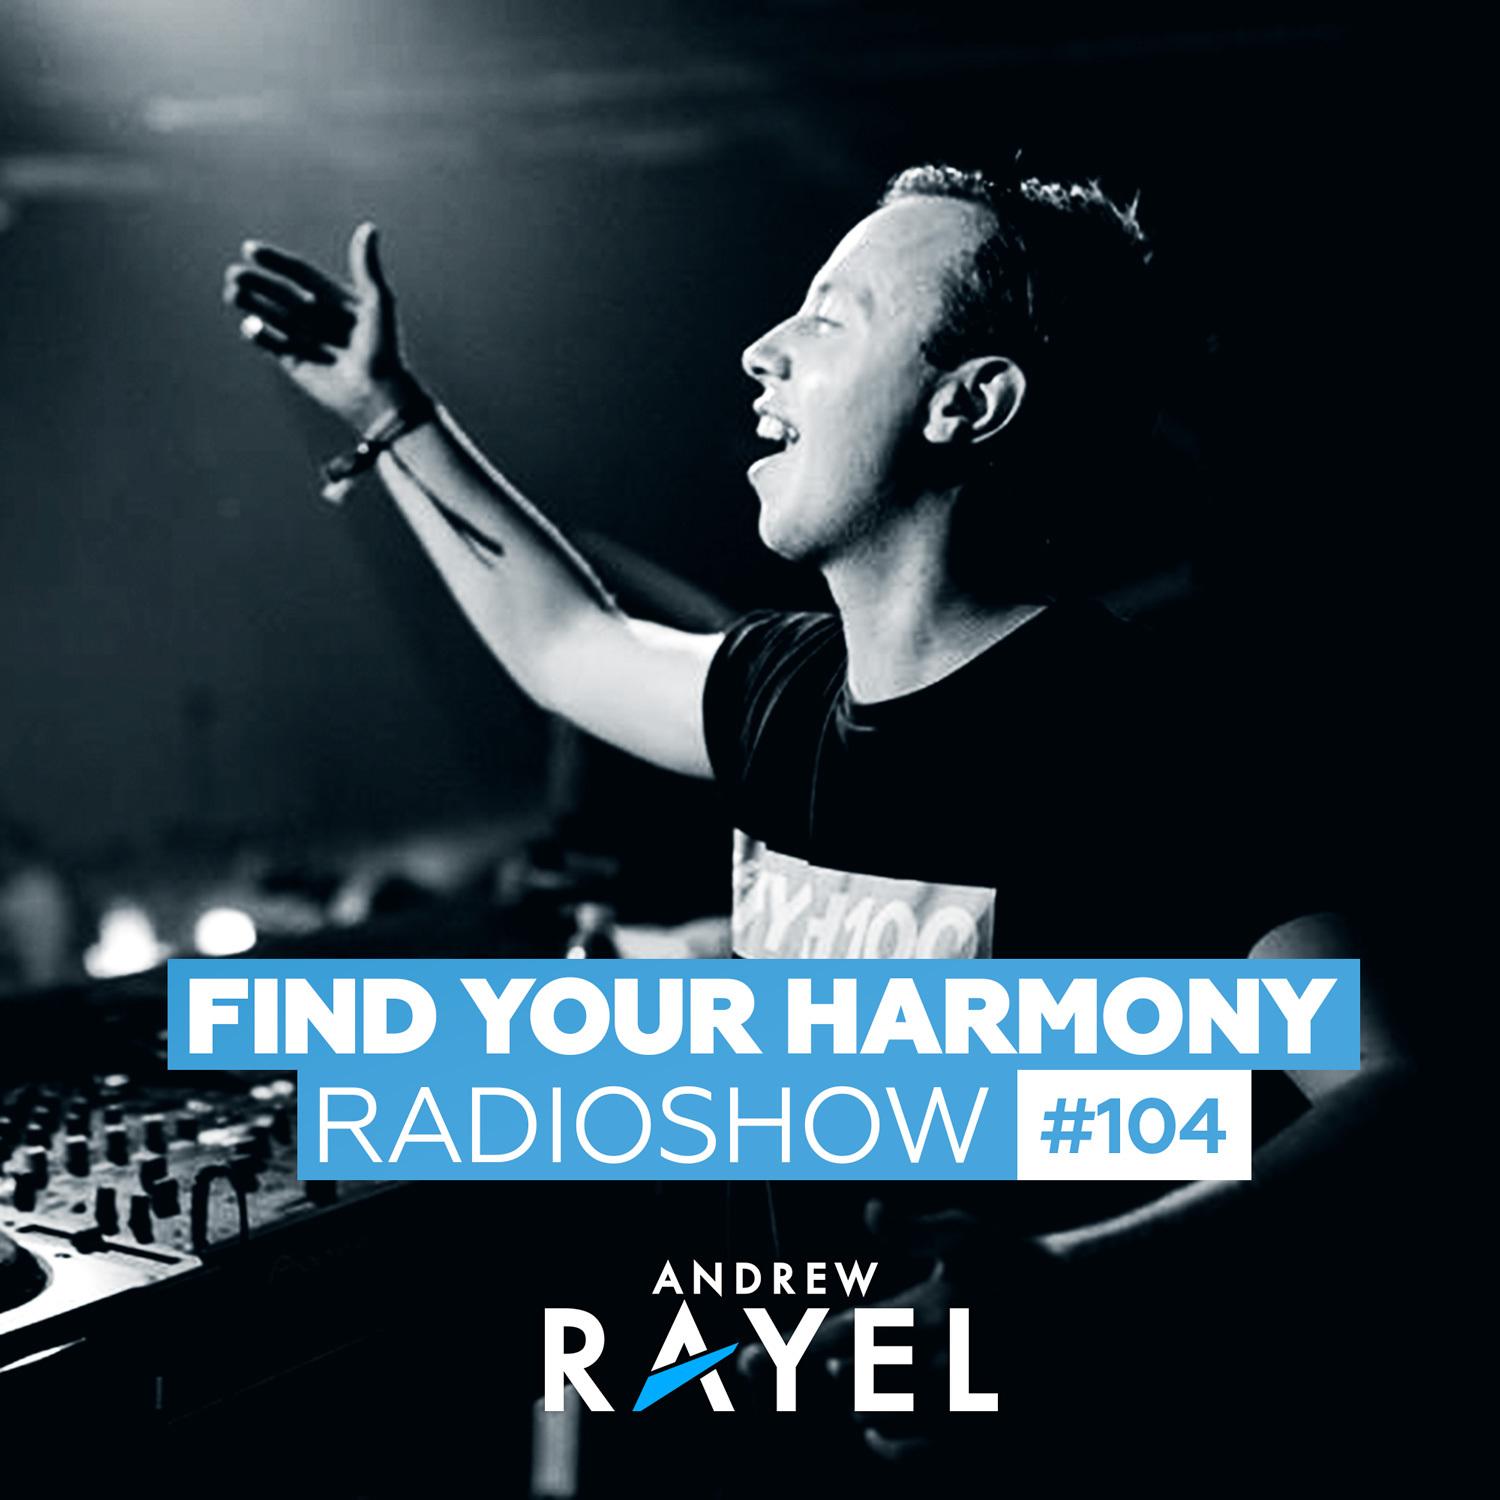 Find Your Harmony Radioshow #104